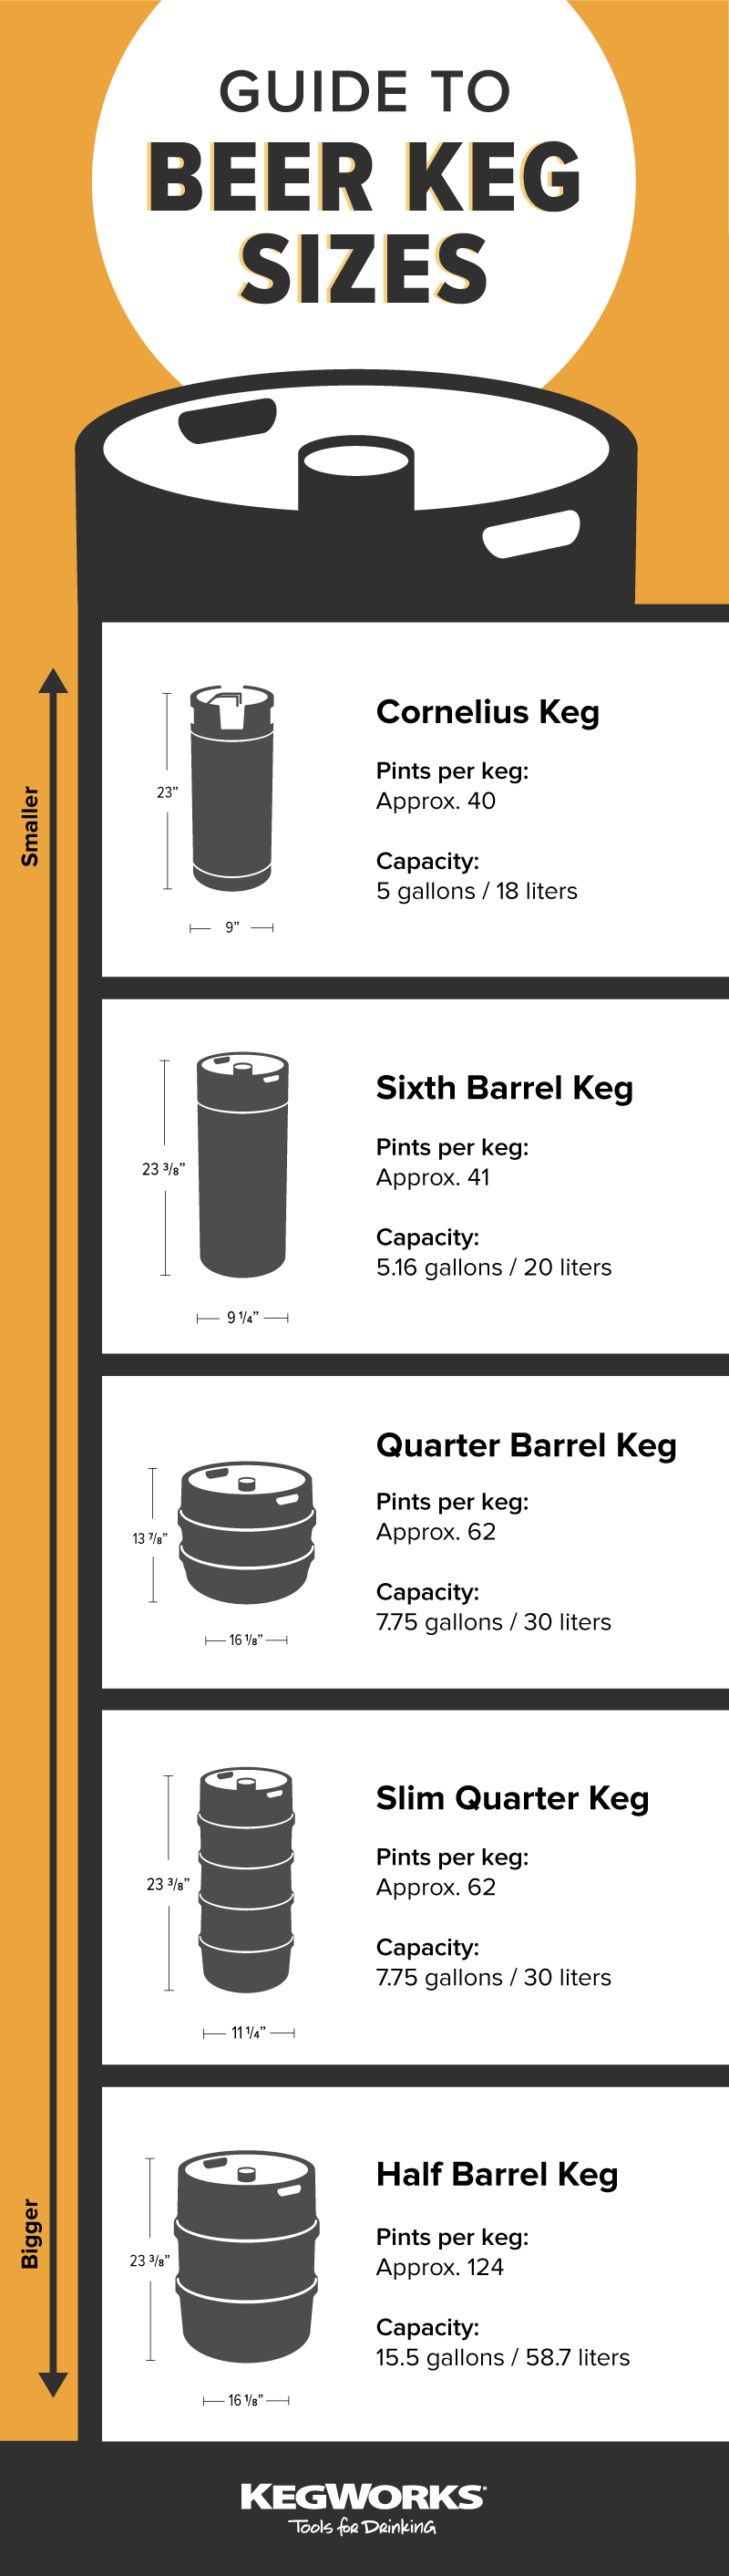 Những kích cỡ khác của thùng bia và số lượng pint tương ứng với chúng ở Vương quốc Anh là như thế nào?